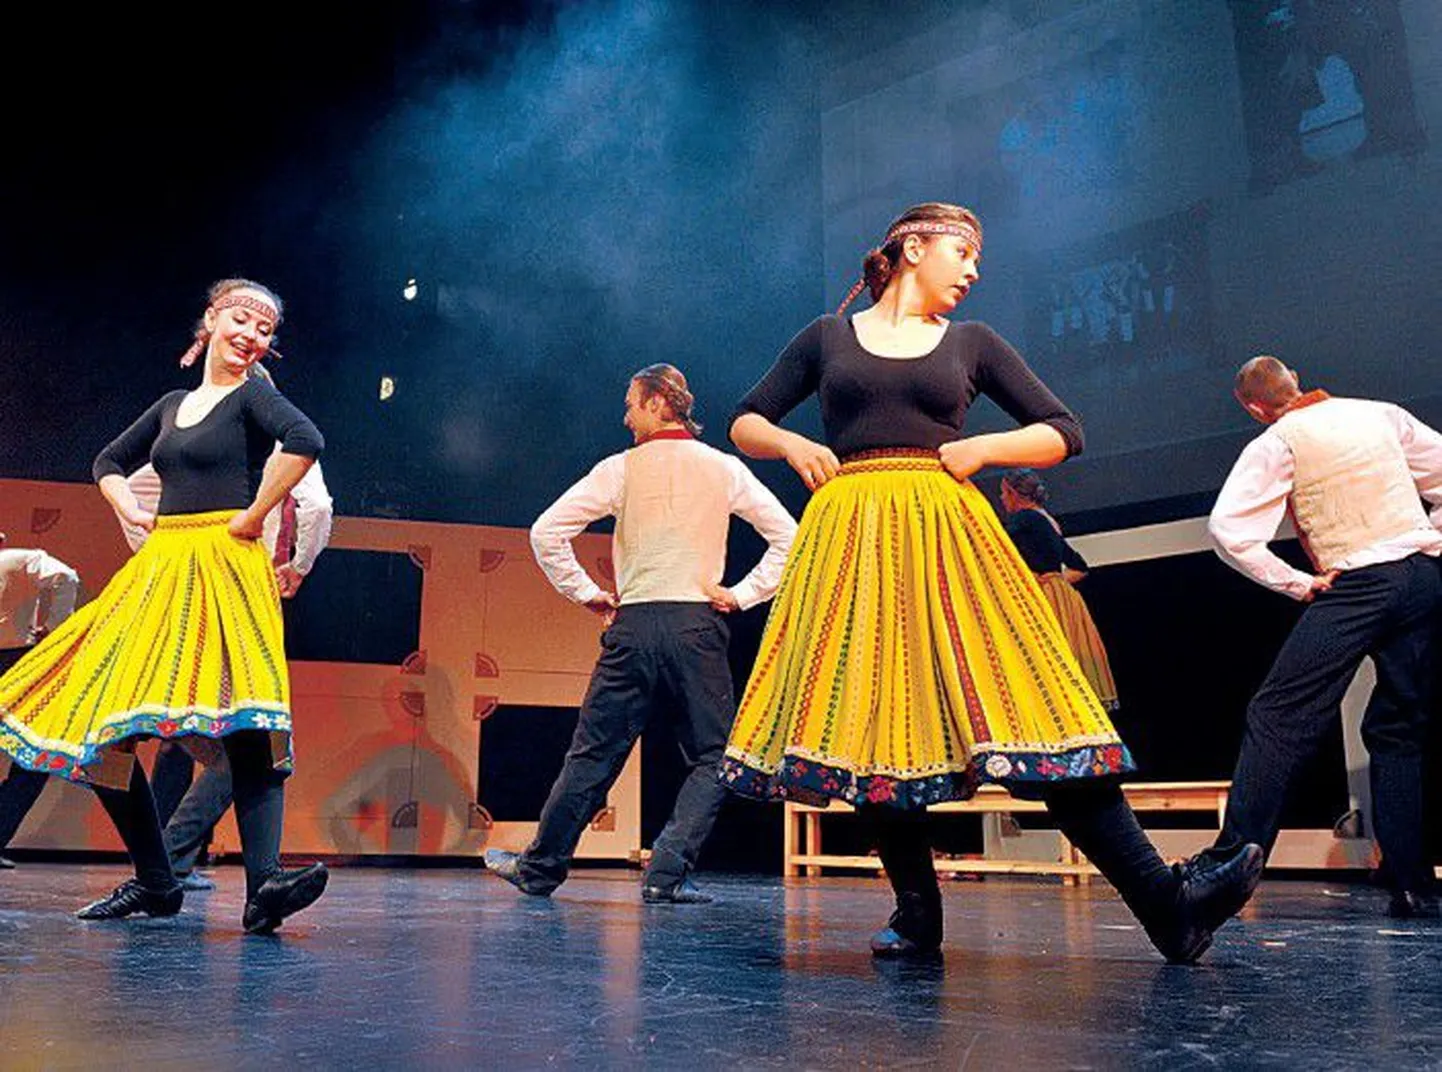 На концерте, посвященном 35-летию студии Русского театра, студийцы зажигательно танцевали и показывали веселые сценки.